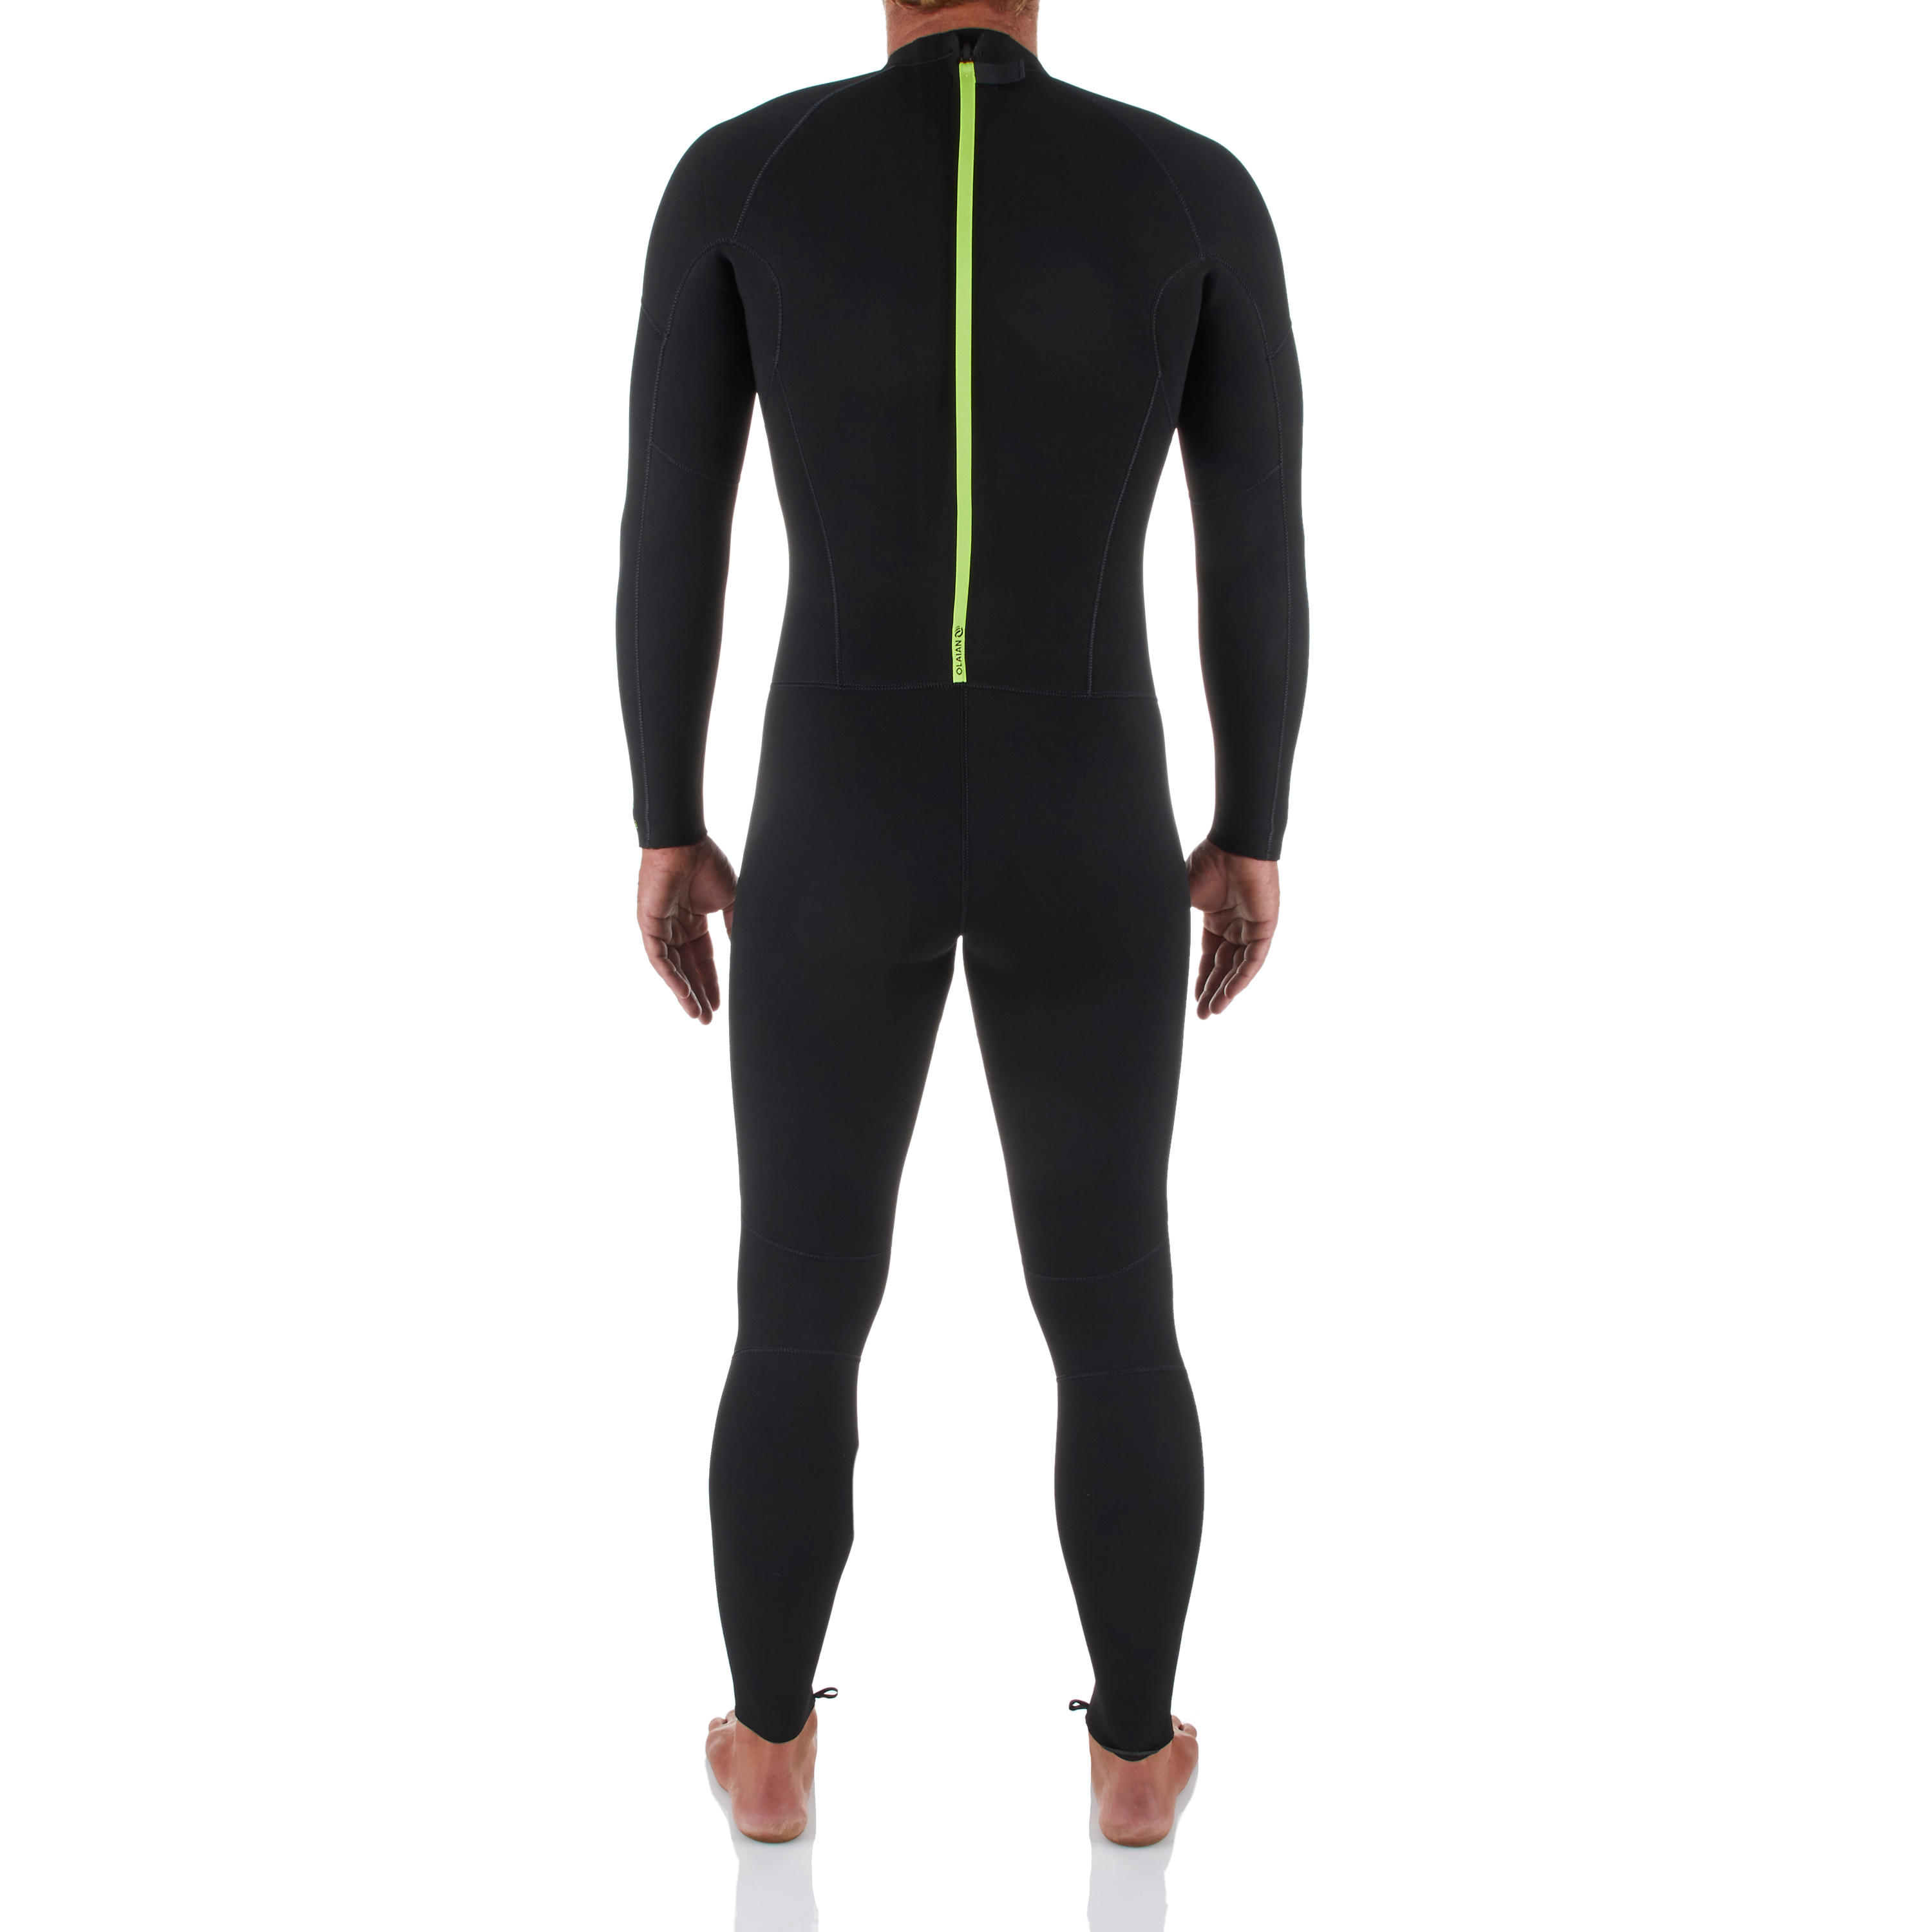 Men's Neoprene Wetsuit – 100 - graphite black, Lime green - Olaian -  Decathlon